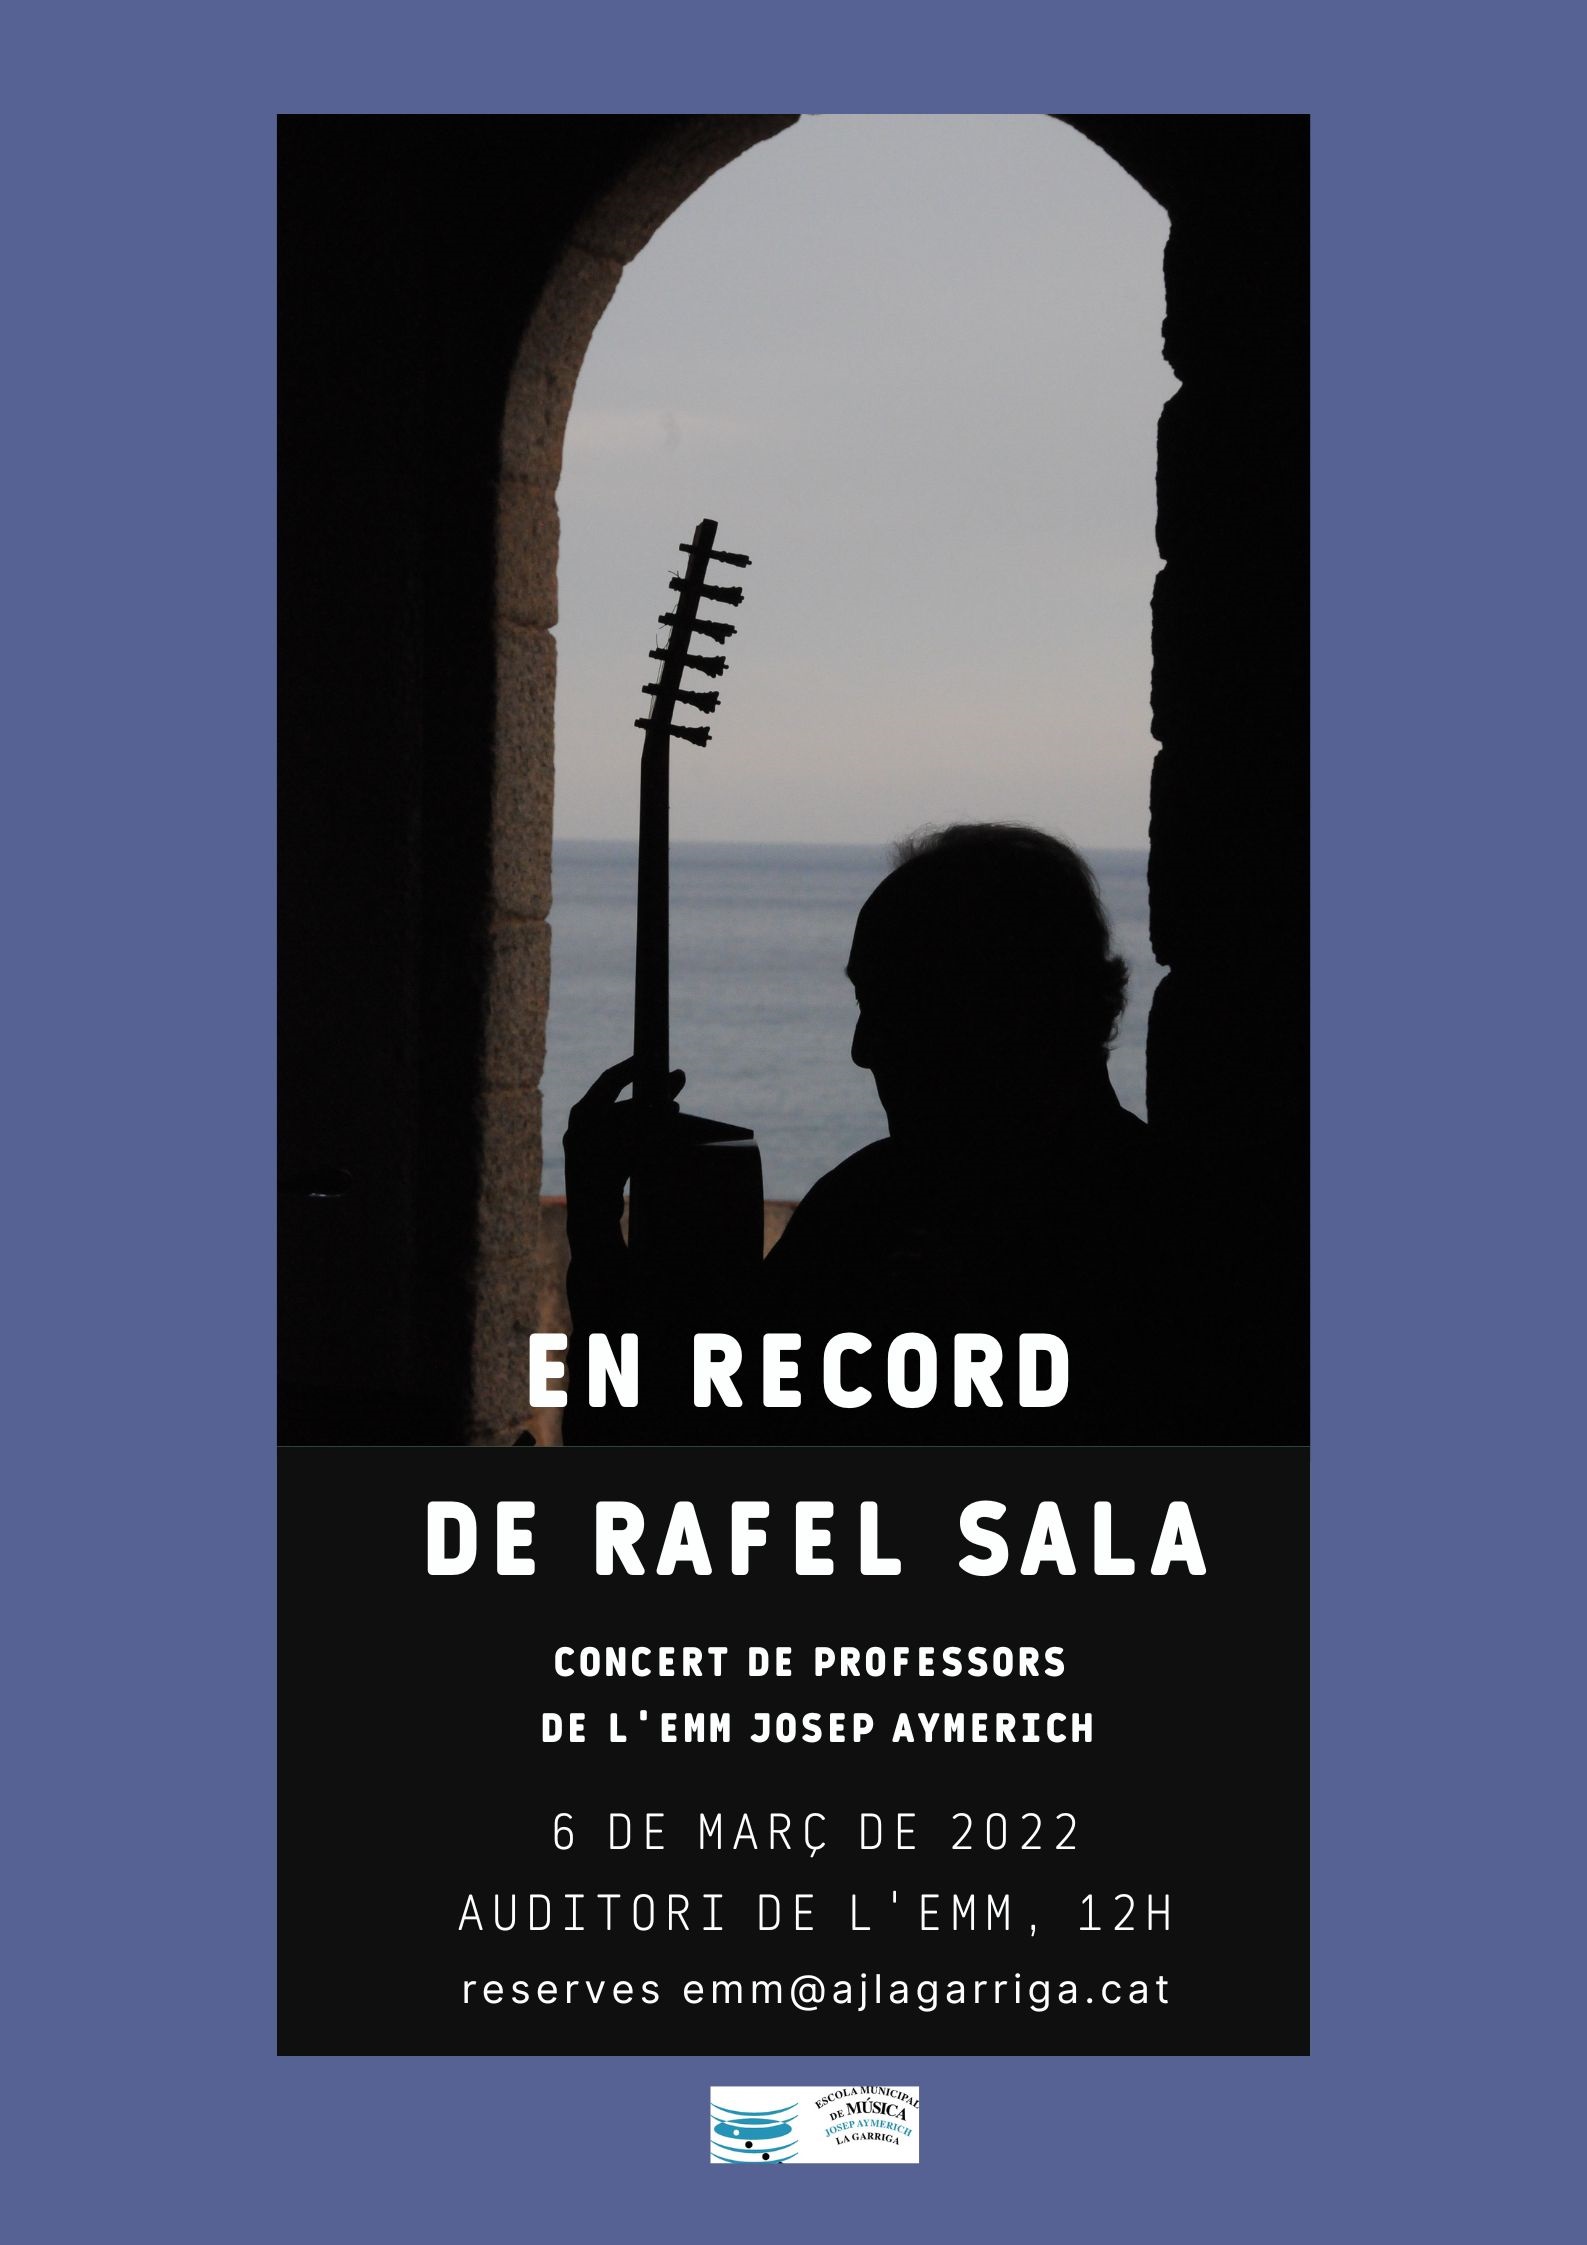 Concert en record del Rafel Sala